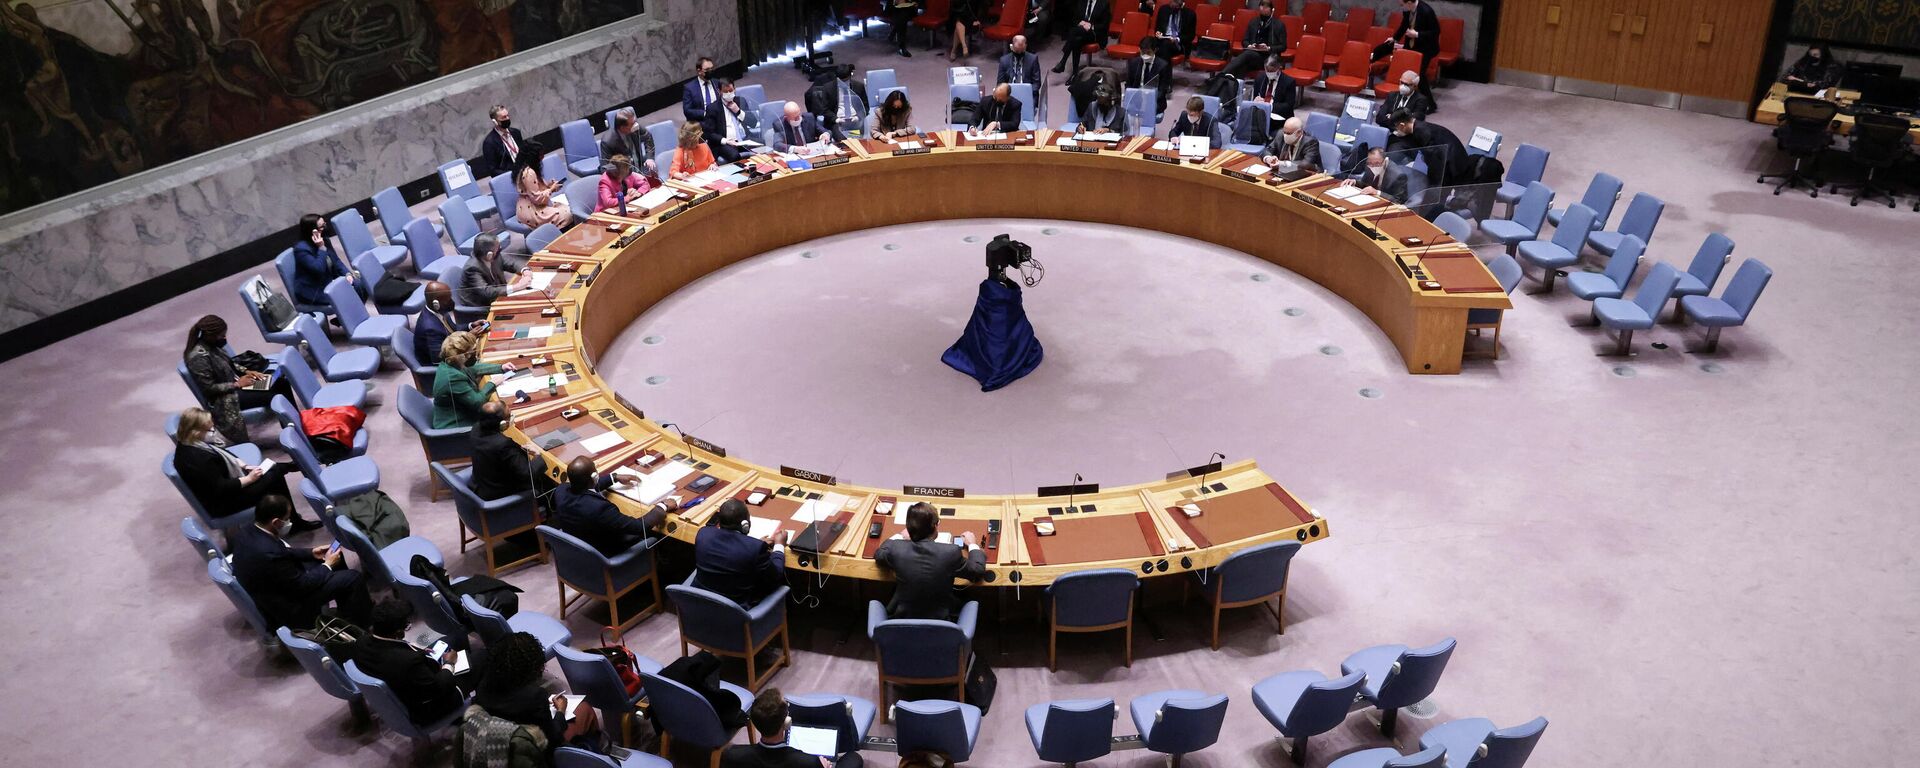 جلسة نقاش مجلس الأمن الدولي حول أزمة أوكرانيا وروسيا، الأمم المتحدة، نيويورك، الولايات المتحدة 31 يناير 2022  - سبوتنيك عربي, 1920, 13.04.2022